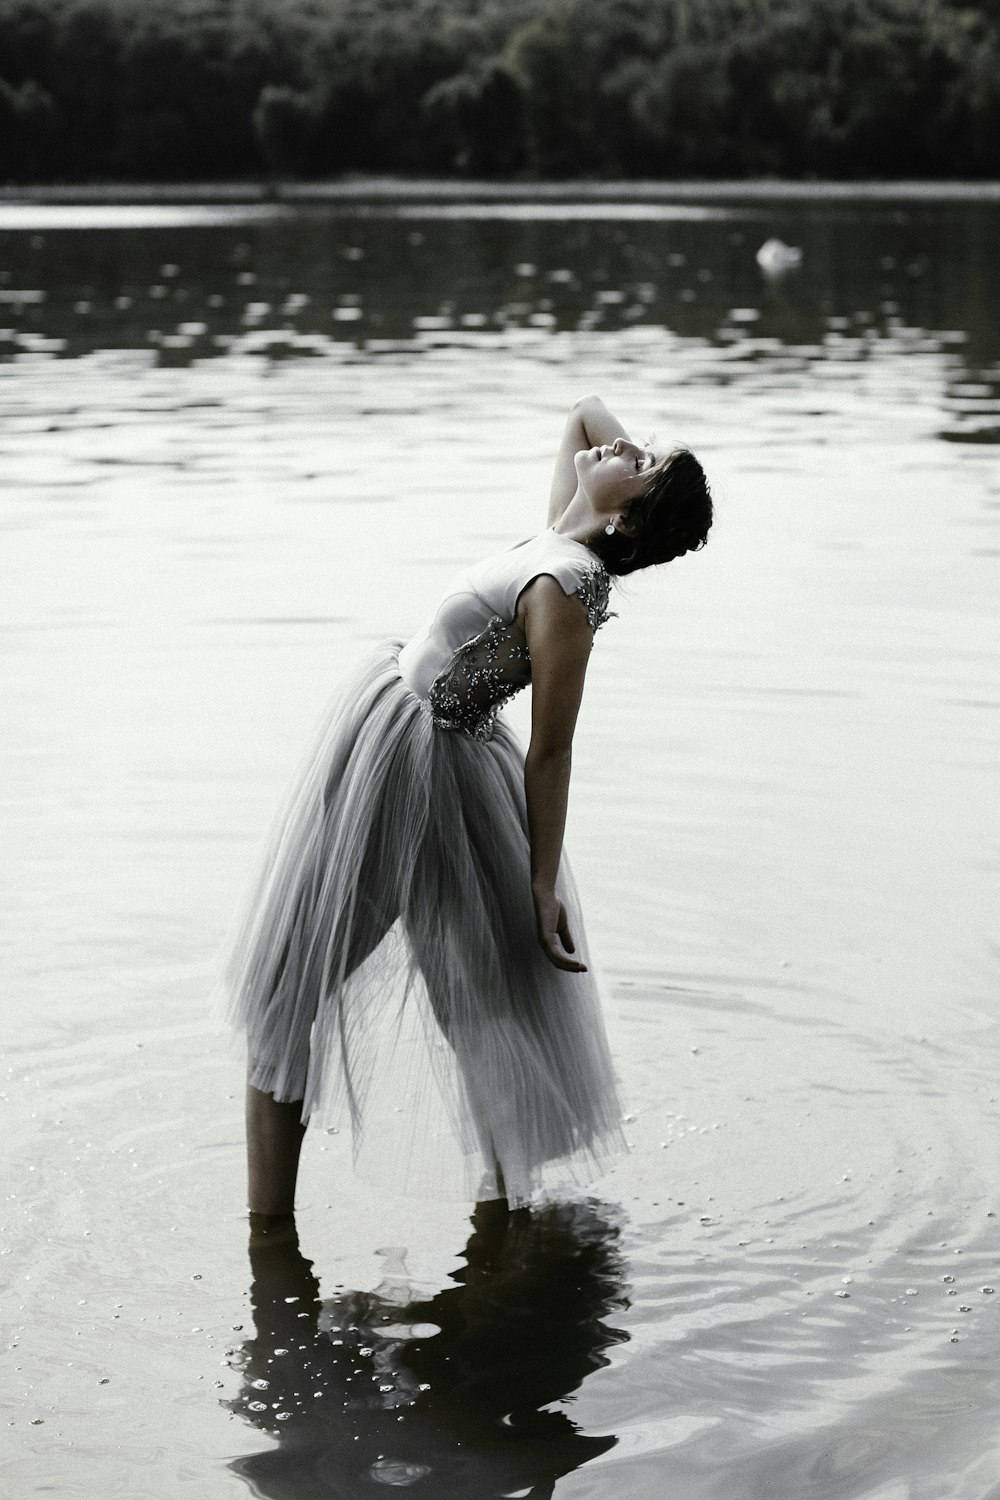 donna in vestito grigio in piedi su uno specchio d'acqua poco profondo